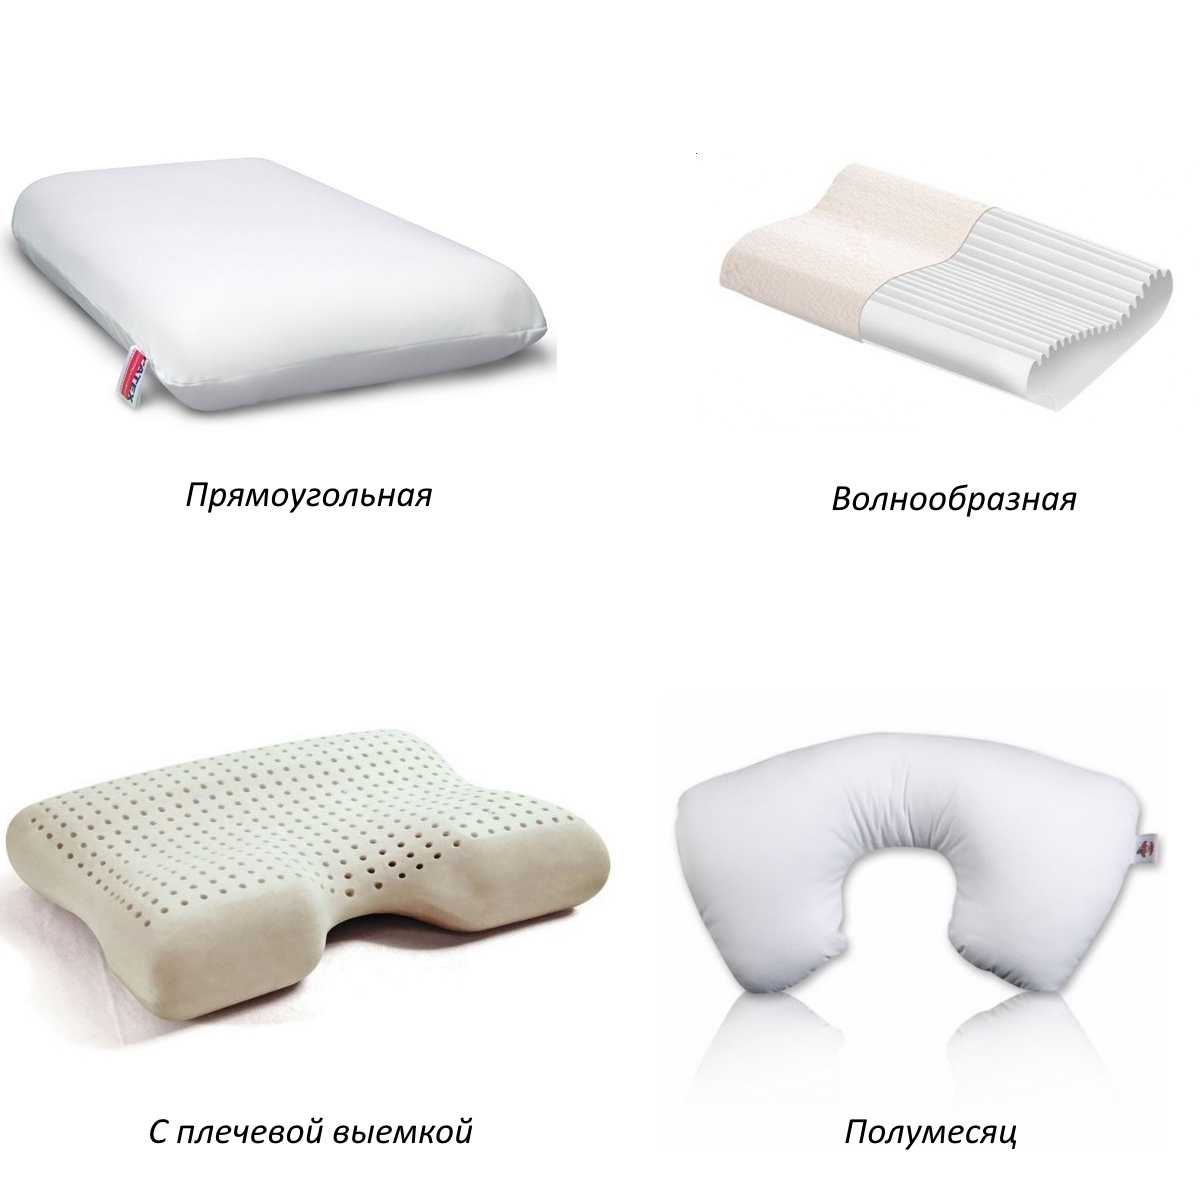 Наполнители для подушек: какой лучший вариант выбрать для сна, какие бывают разновидности, характеристики и правила выбора